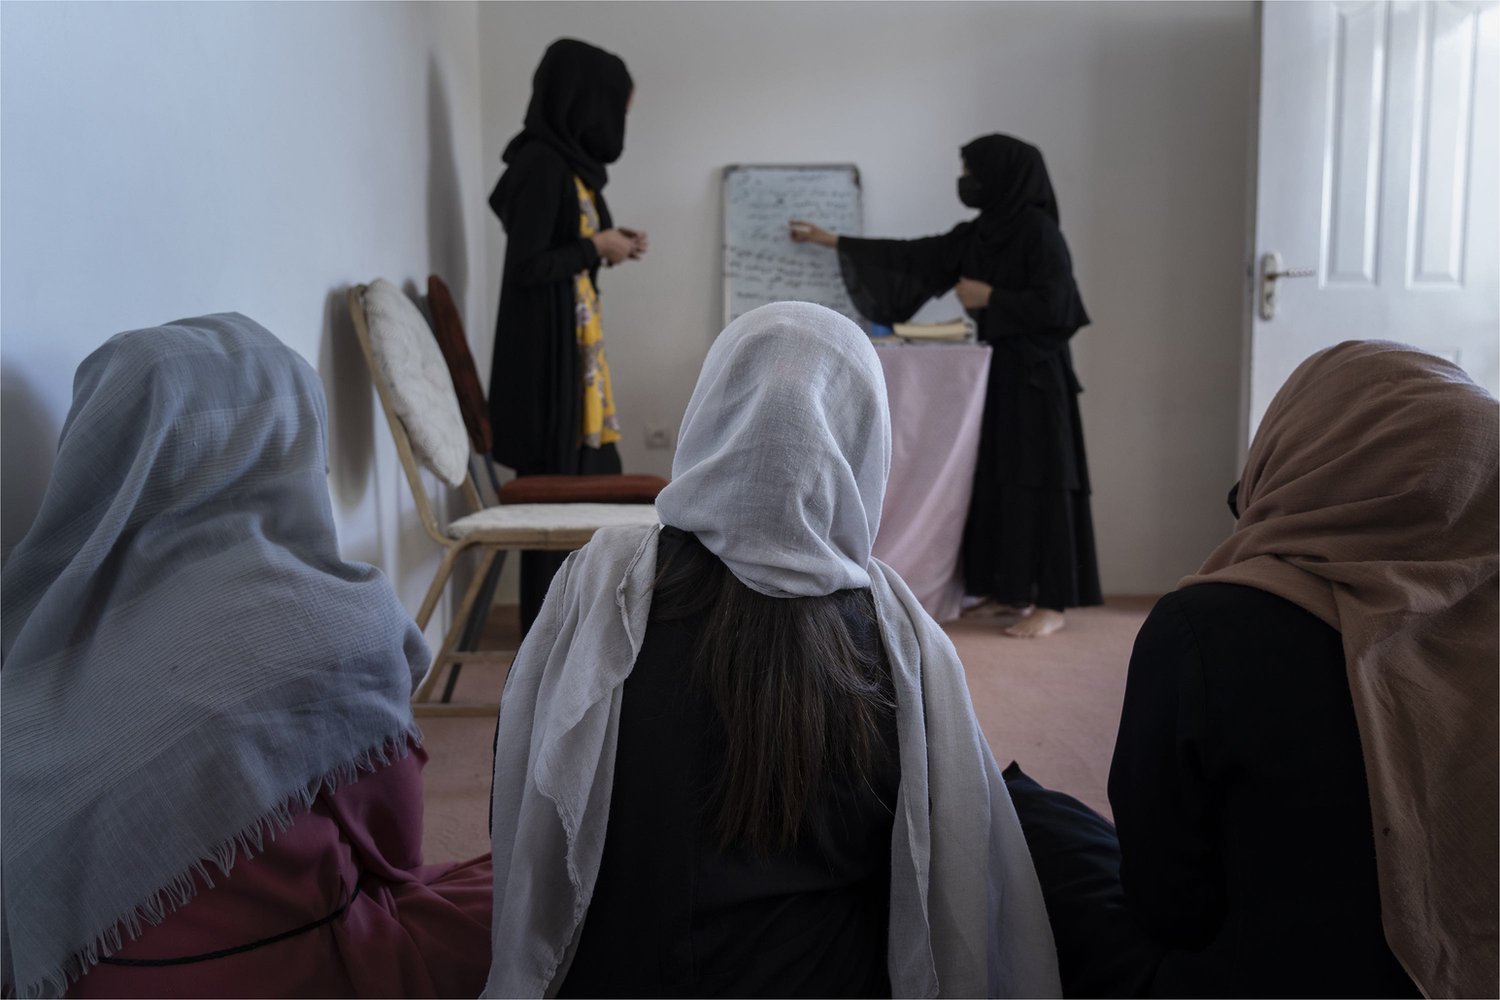 Avganistanke okupljene na času u tajnoj školi